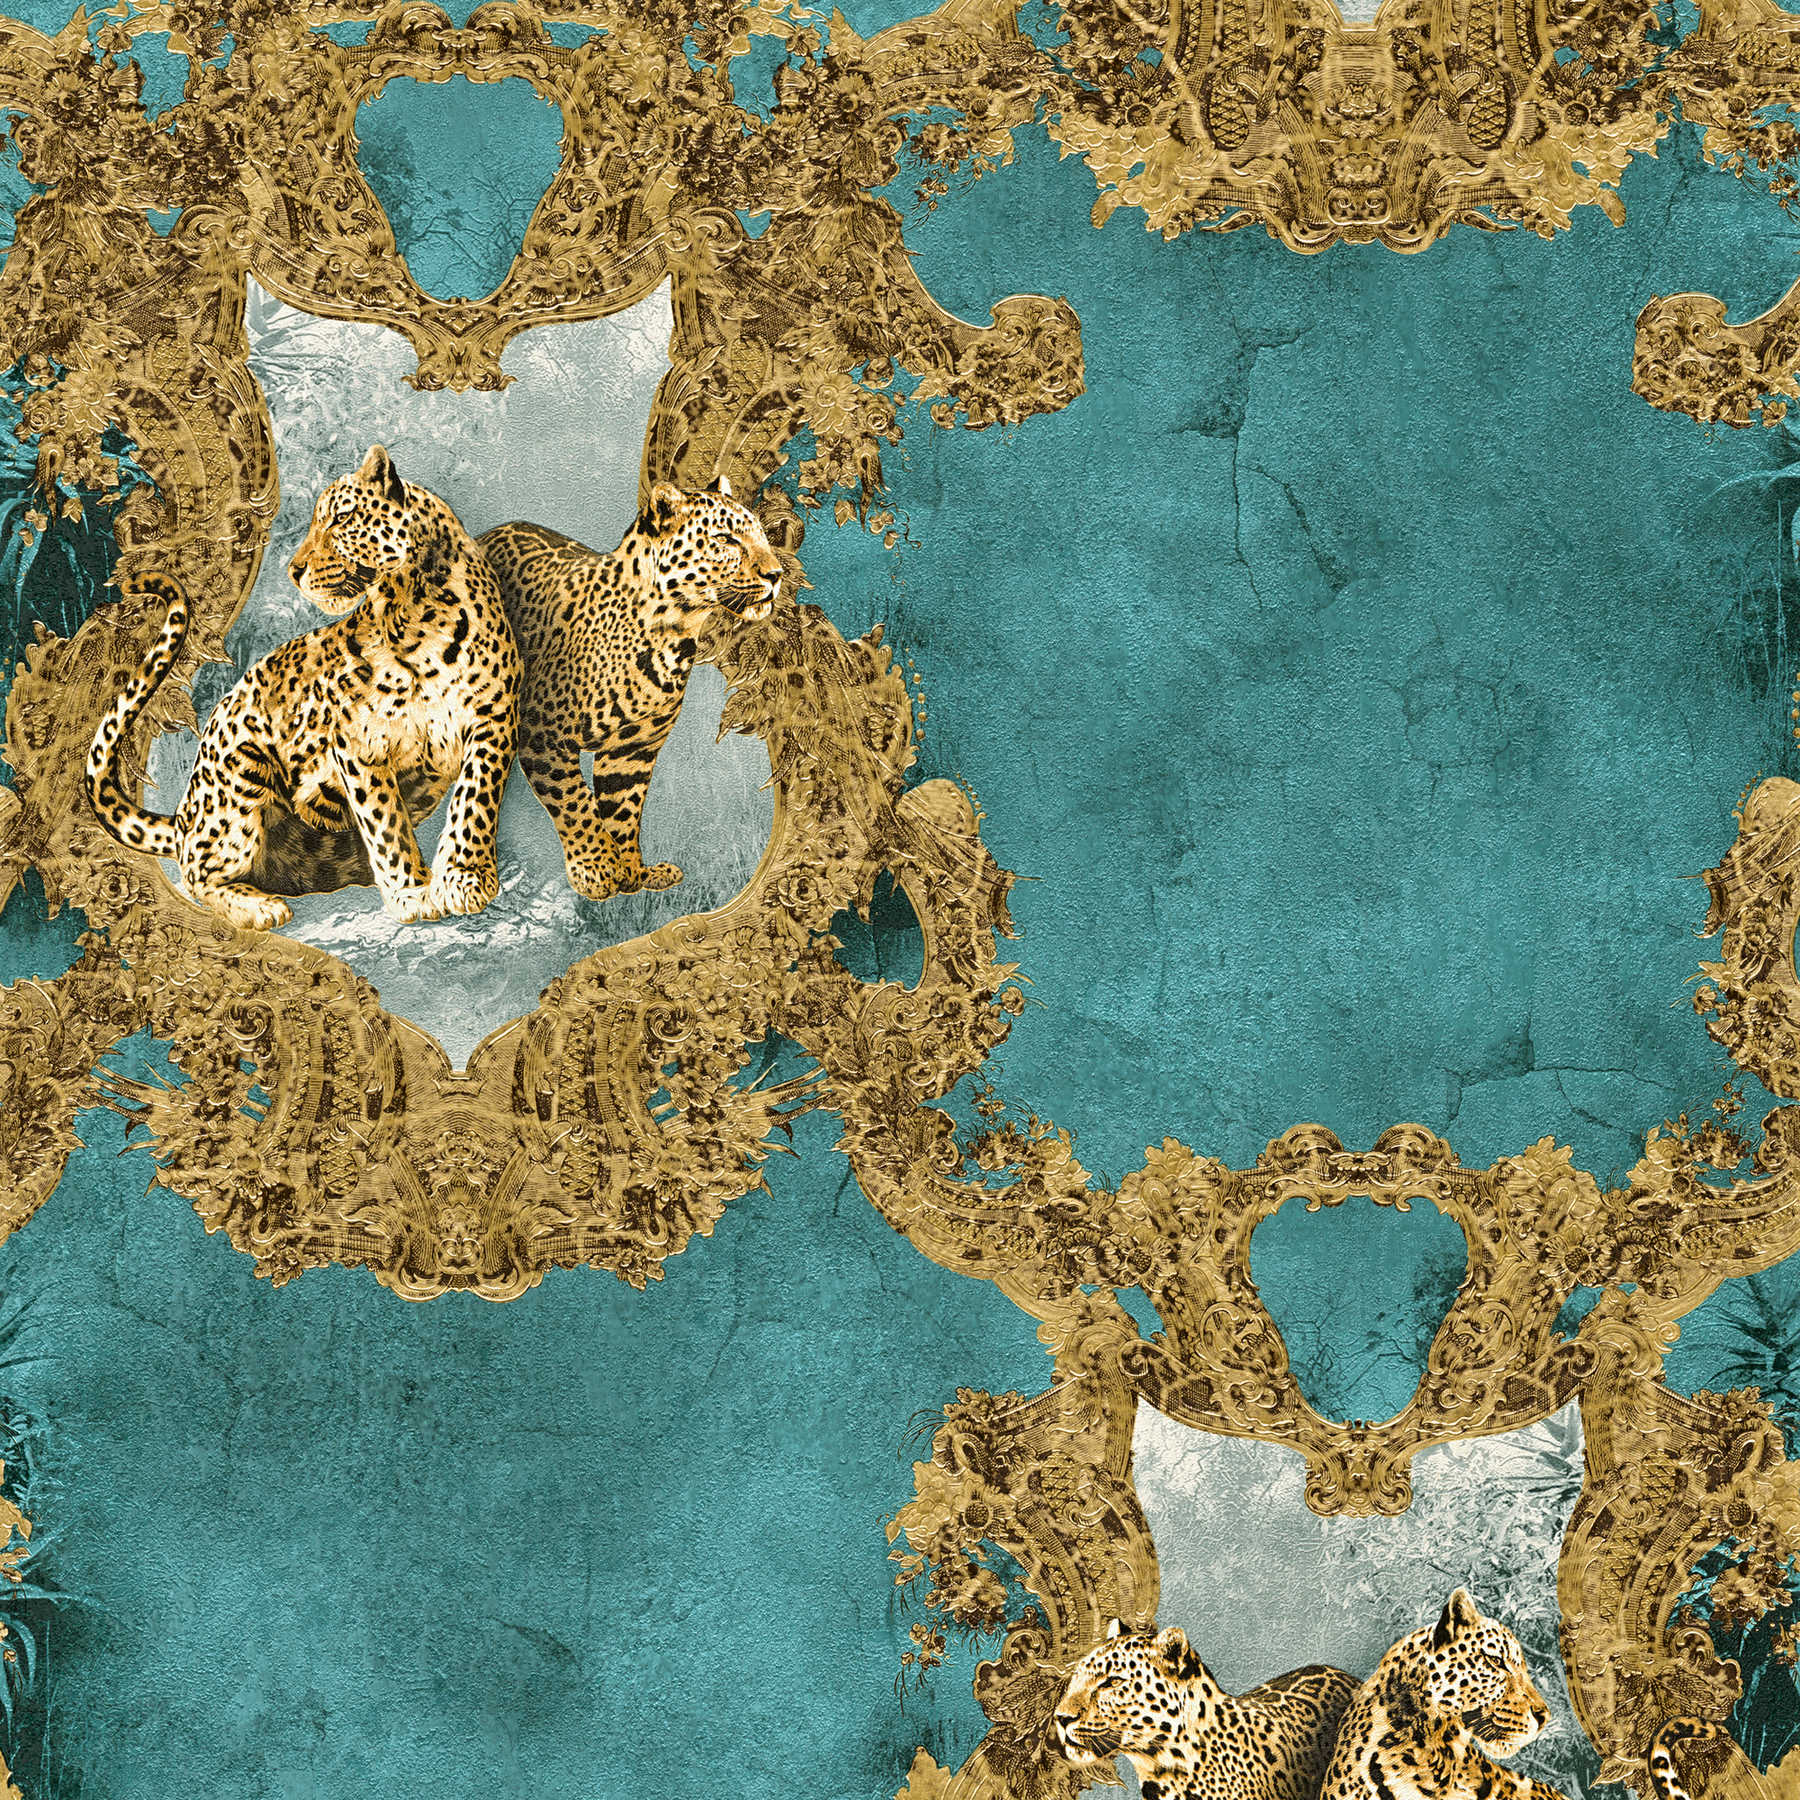         Wallpaper ornaments & leopard motif - blue, brown
    